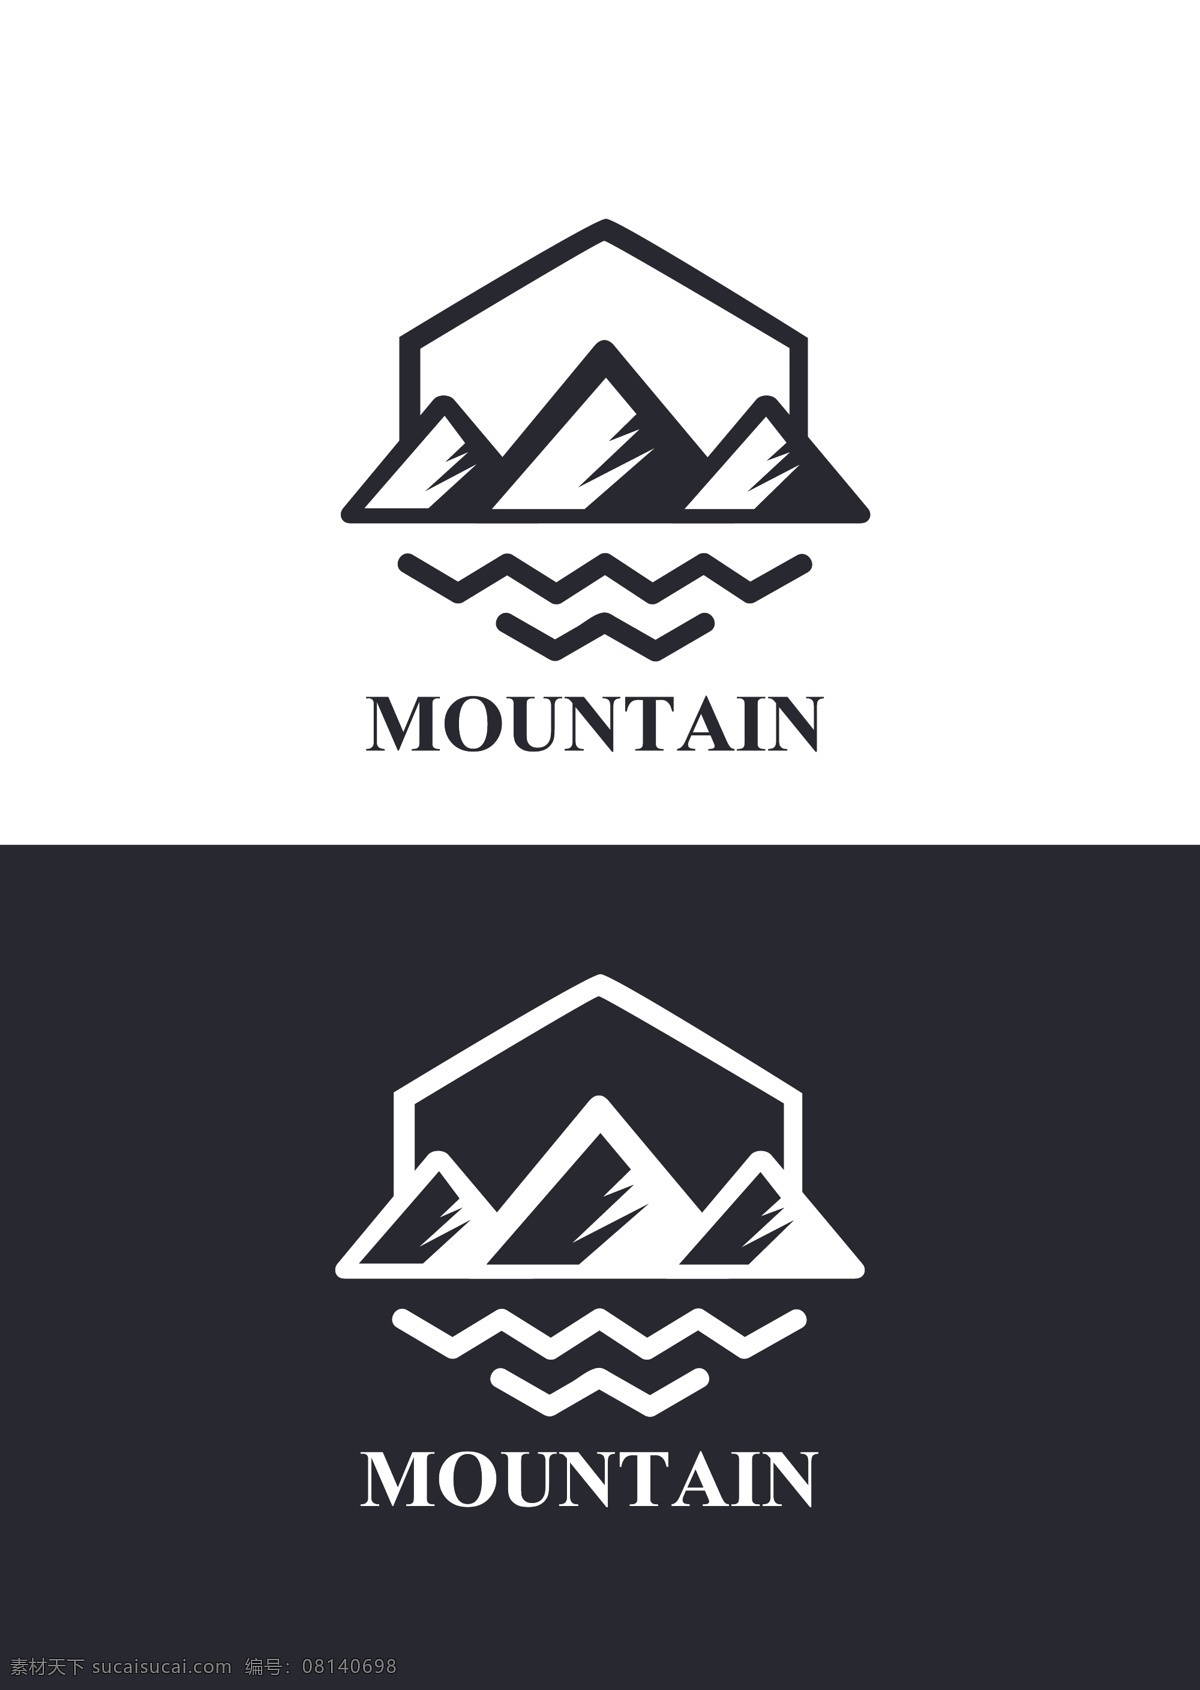 户外 登山 logo 旅行 攀岩 户外徒步 登山徒步 背包客 驴友 徒步中国 登山赛